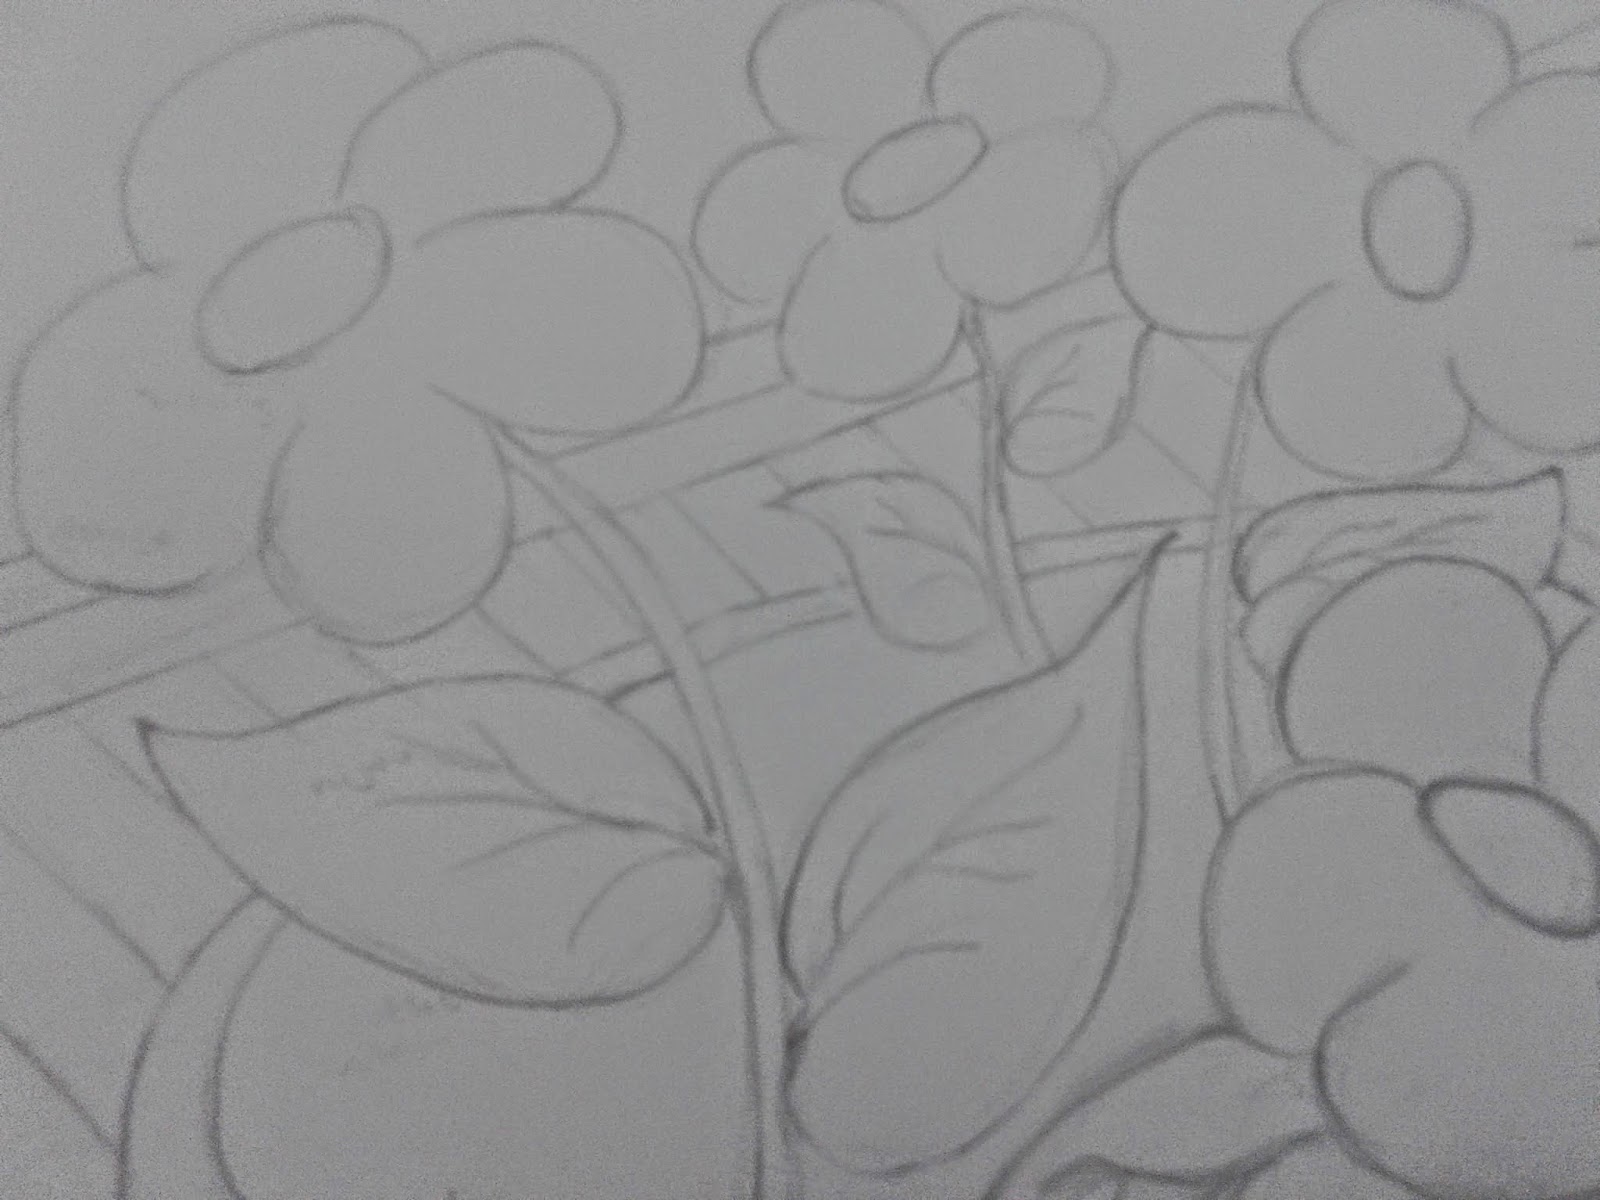 Kumpulan Sketsa  Gambar  Mozaik  Bunga  Sketsabaru